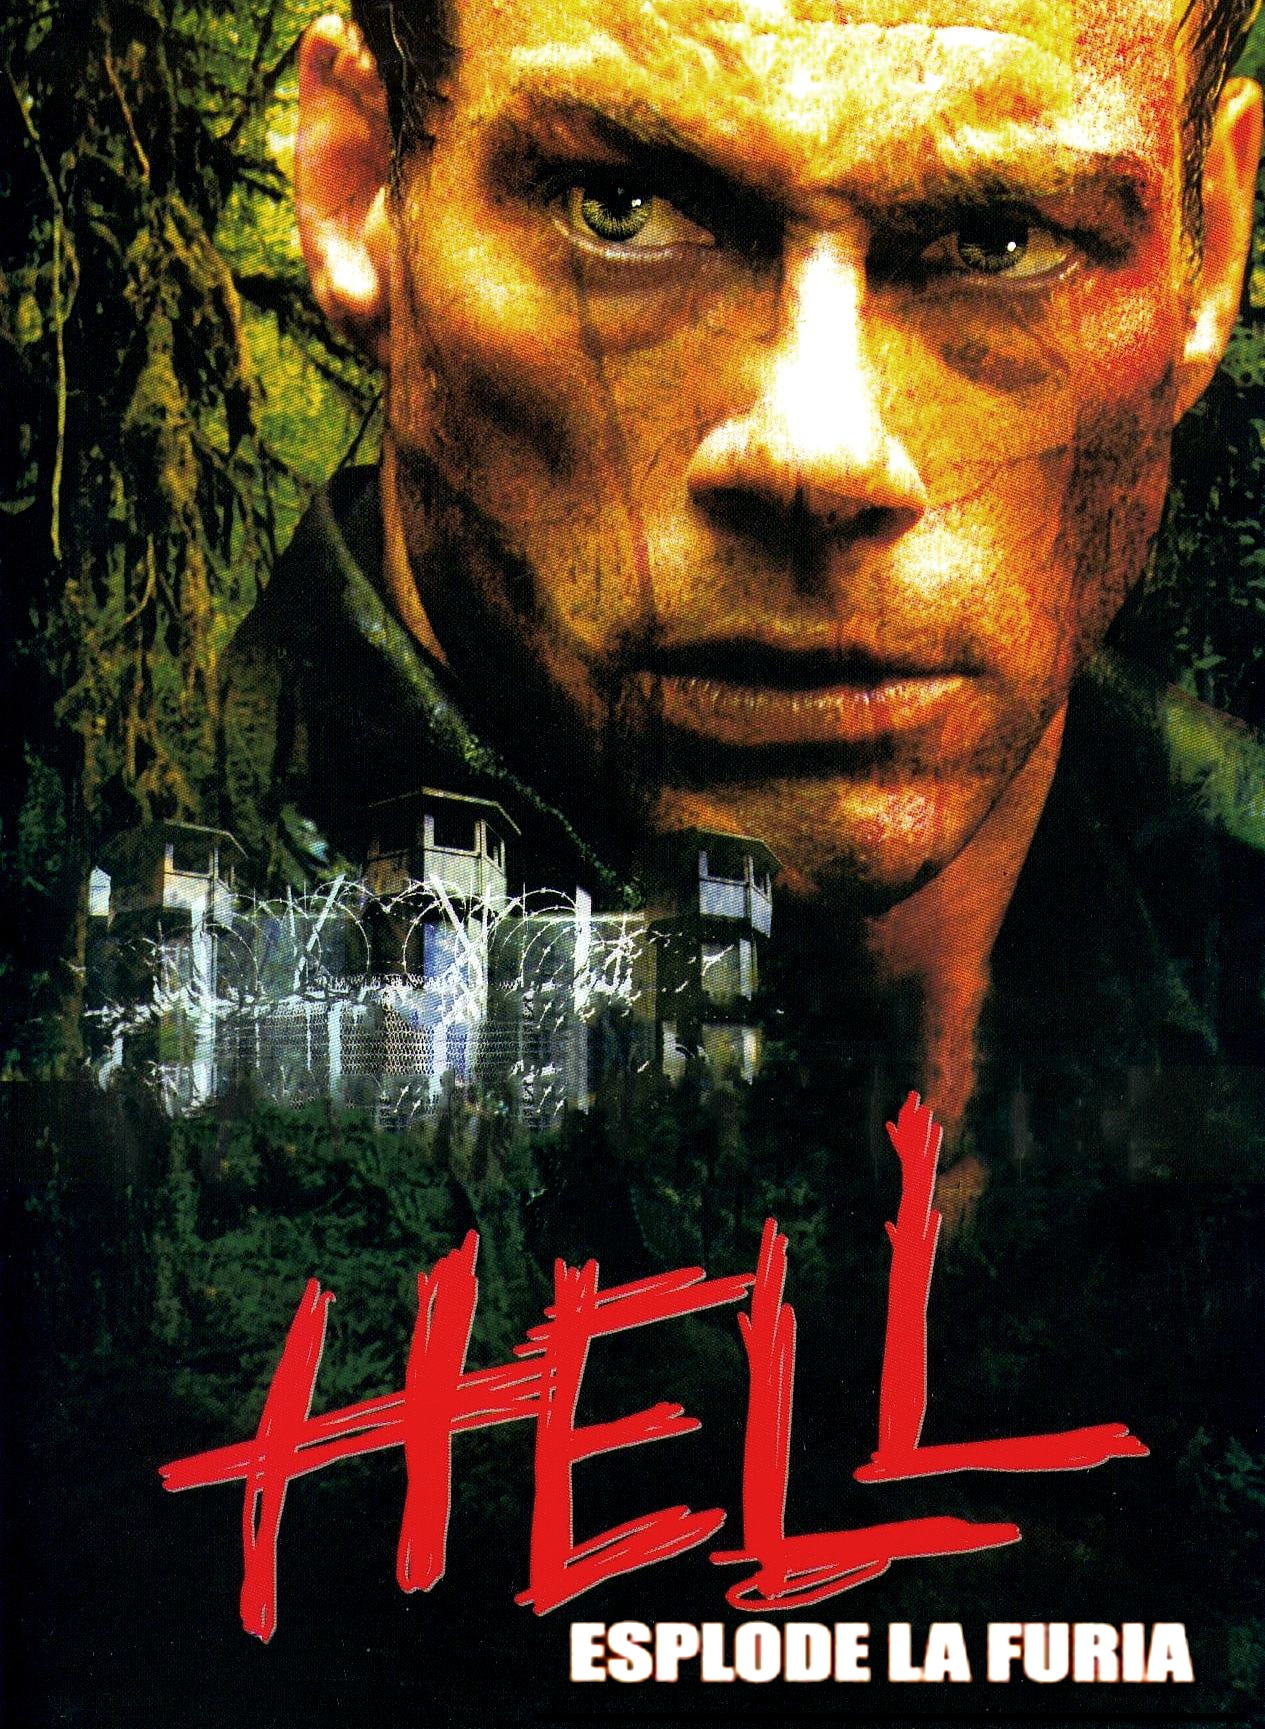 Hell – Esplode la furia [HD] (2003)